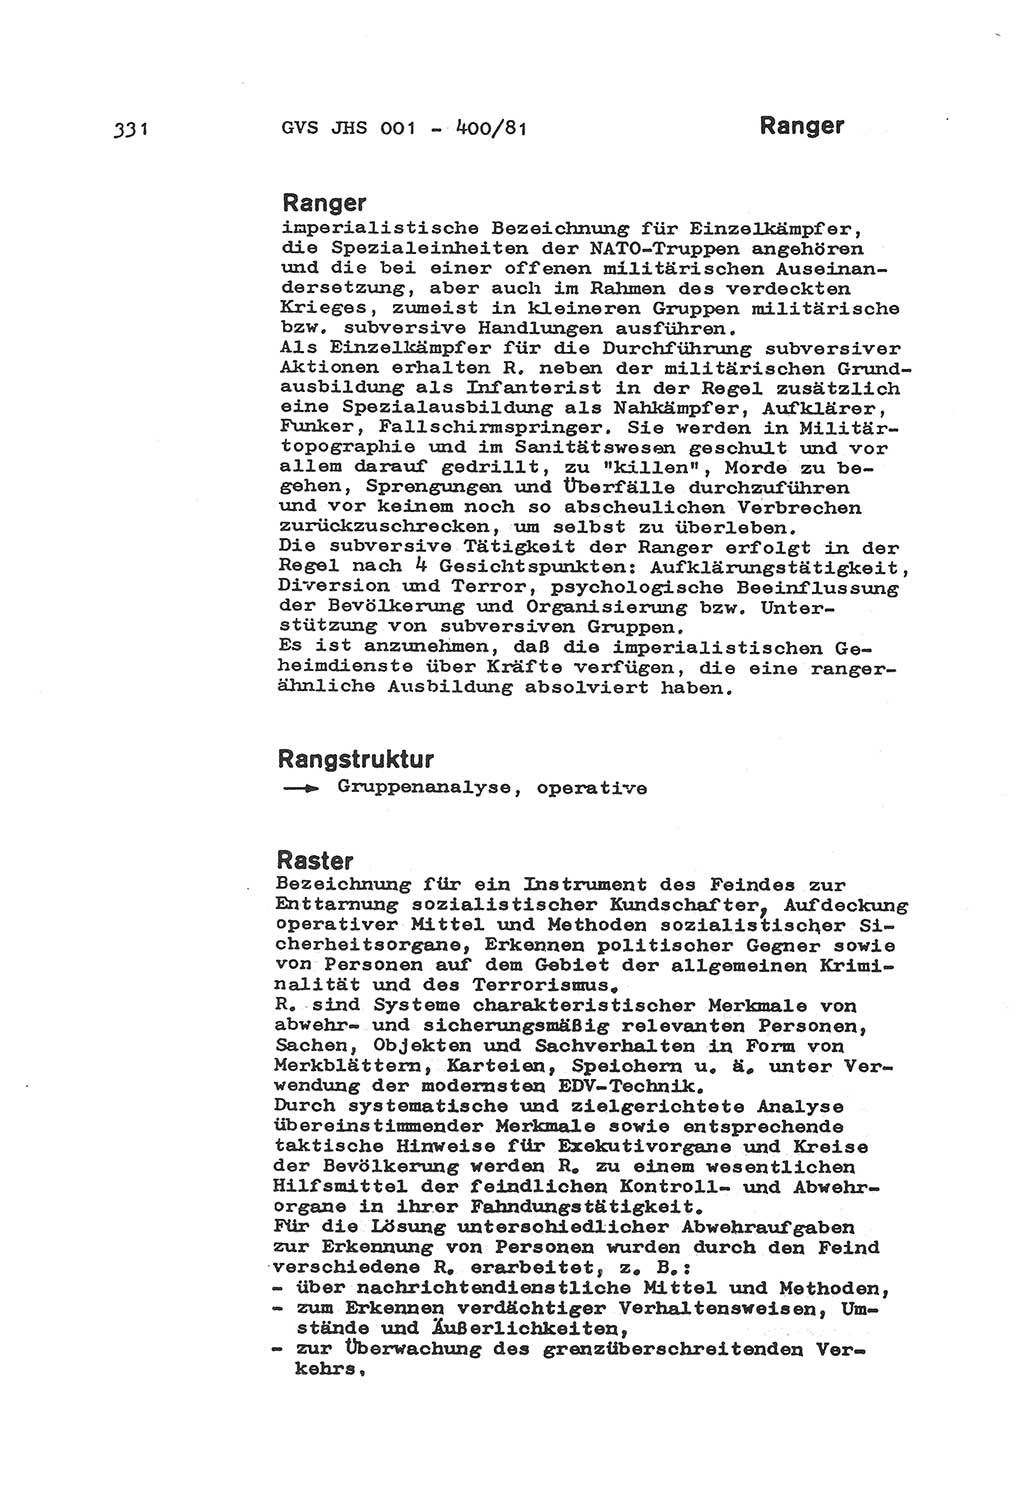 Wörterbuch der politisch-operativen Arbeit, Ministerium für Staatssicherheit (MfS) [Deutsche Demokratische Republik (DDR)], Juristische Hochschule (JHS), Geheime Verschlußsache (GVS) o001-400/81, Potsdam 1985, Blatt 331 (Wb. pol.-op. Arb. MfS DDR JHS GVS o001-400/81 1985, Bl. 331)